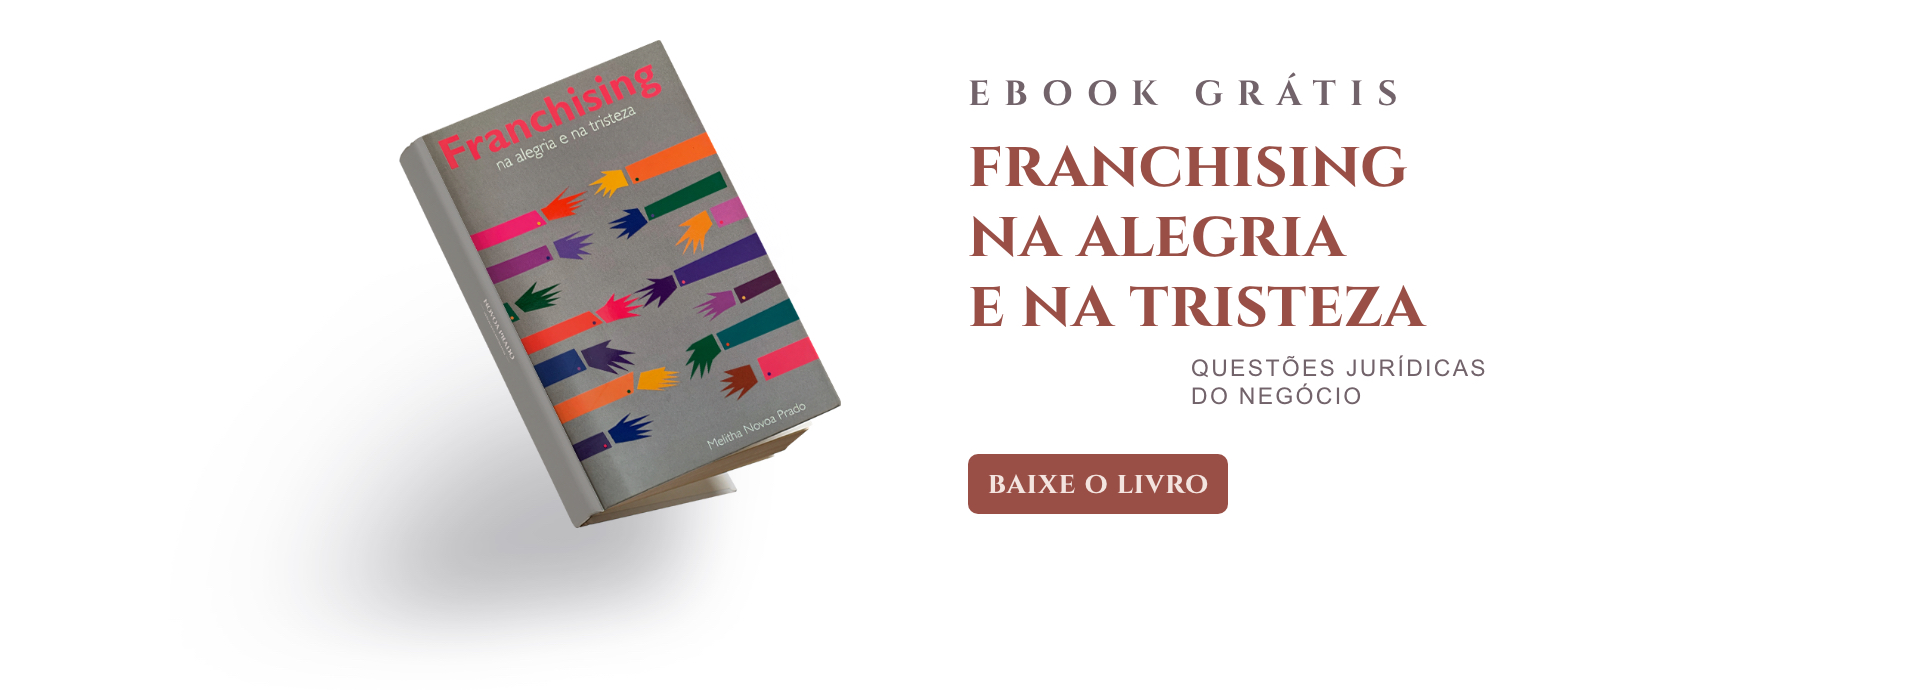 Ebook Grátis - franchising Na Alegria e na Tristeza - Questões Jurídicas do negócio